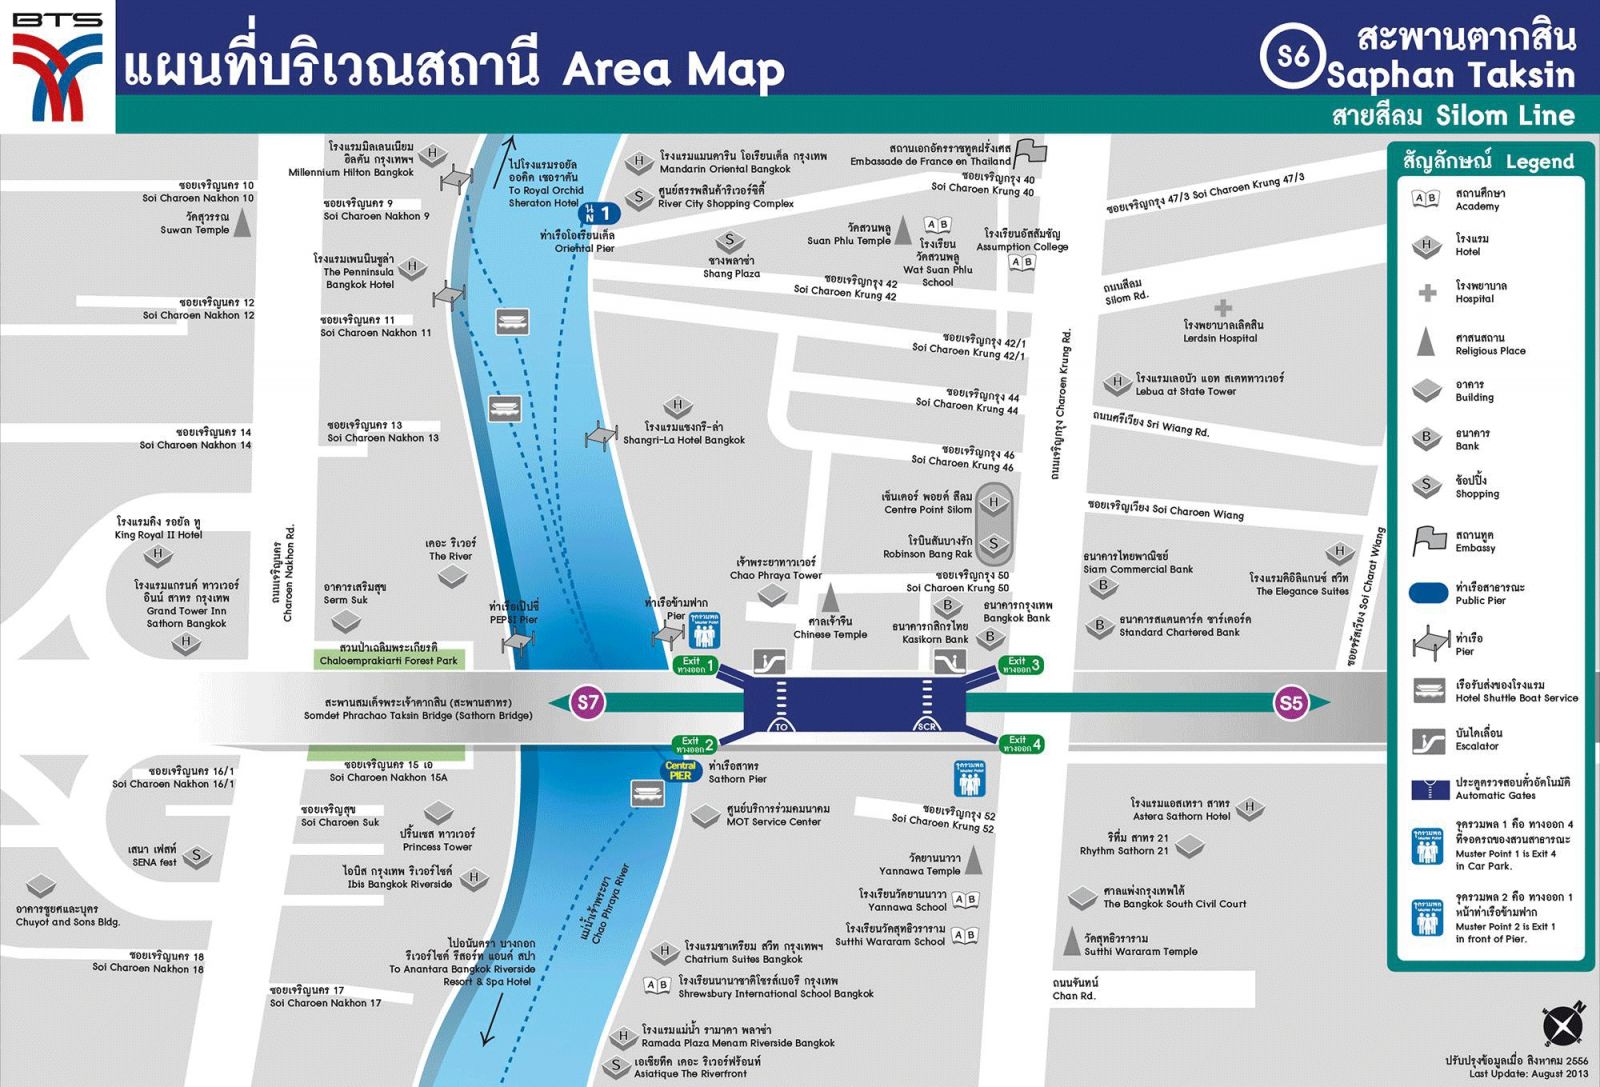 Карта бангкок банка. BTS Saphan Taksin. Taksin Bridge Bangkok. Карта Бангкок банка на русском.